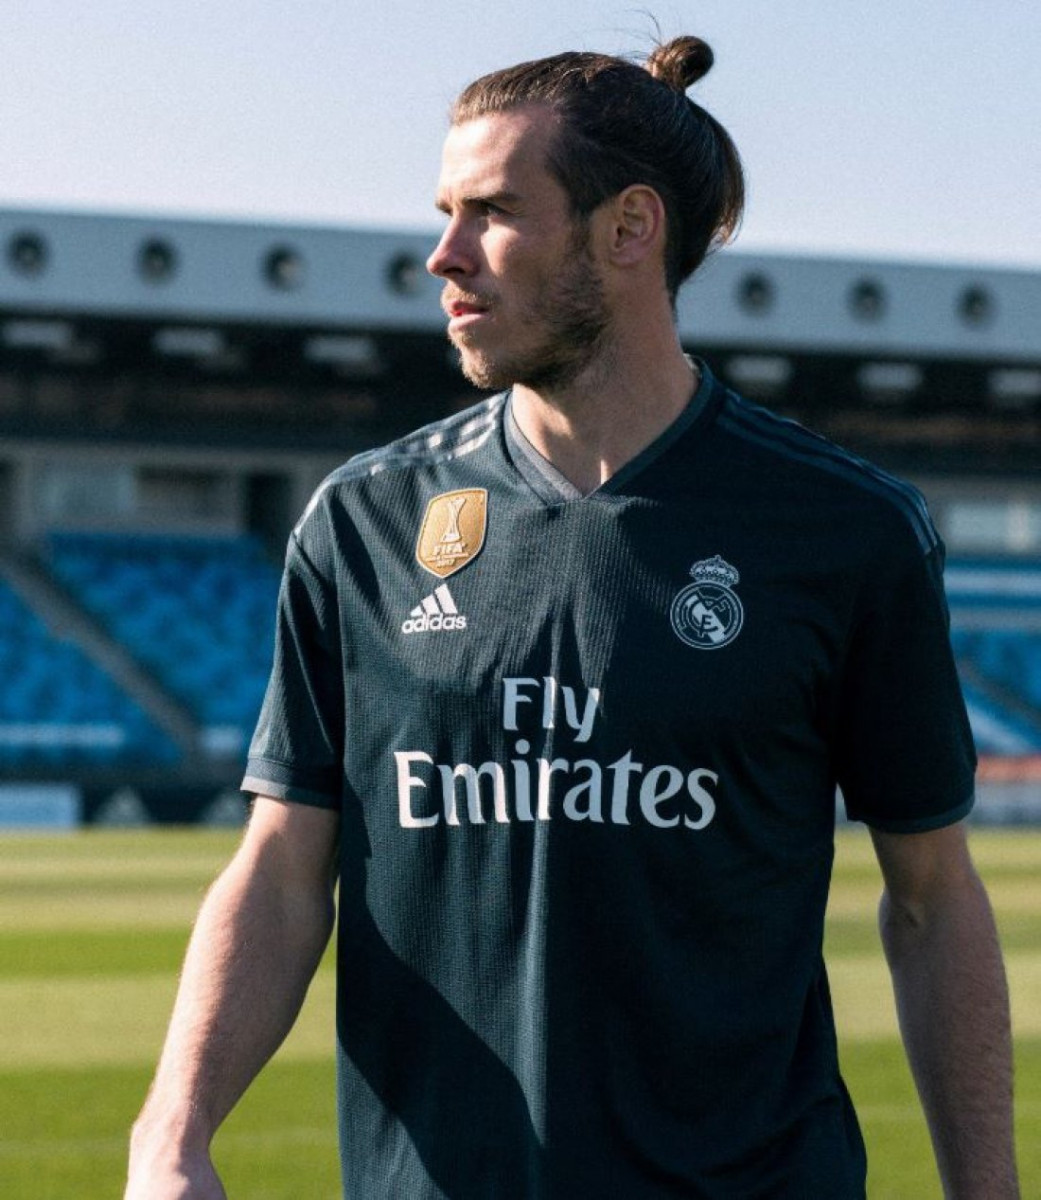 Real Madrid: camiseta más cara del mundo. - Blogs - Fútbol Emotion